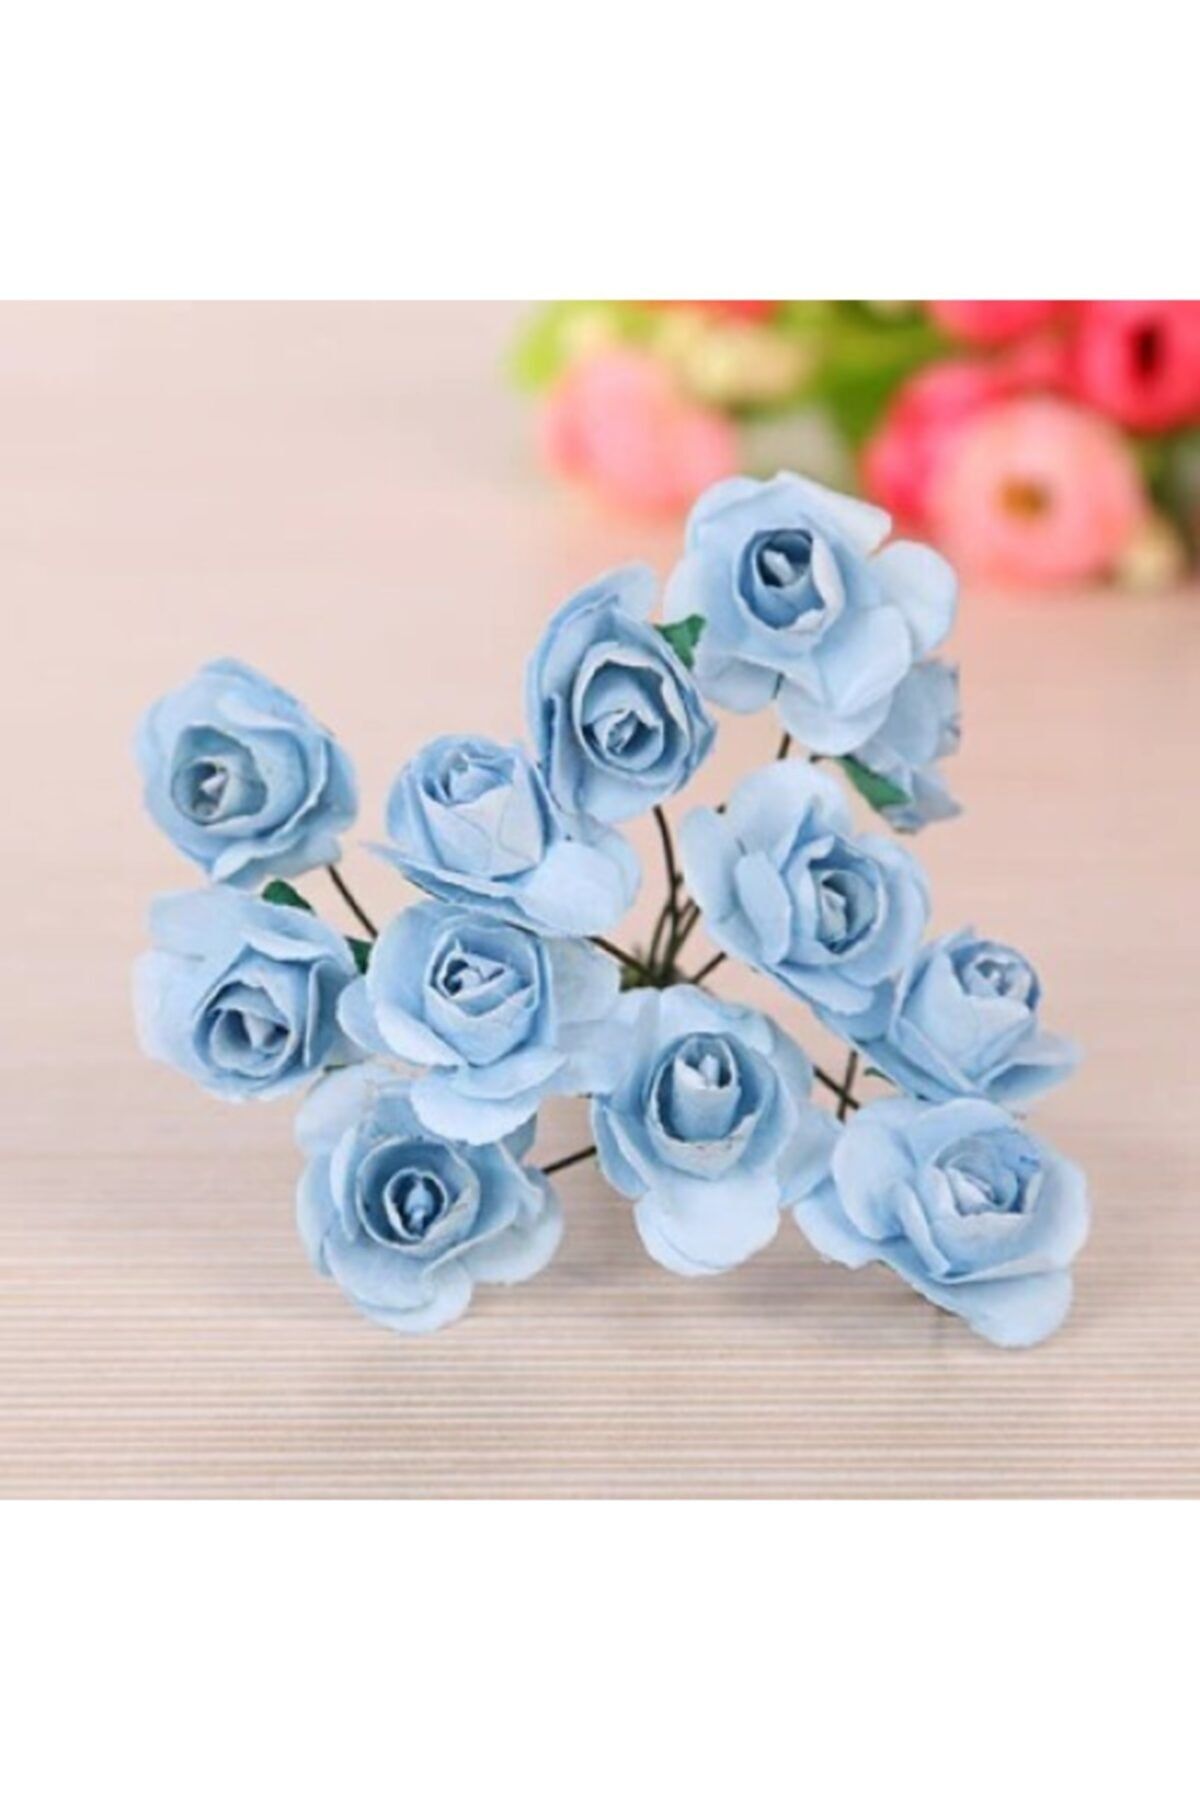 Aker Hediyelik Bebe Mavi Kağıt Gül 144lü Kağıt Güller El Işi Süsleme Hobi Dekorasyon Tasarım Yapay Çiçek Aranjman